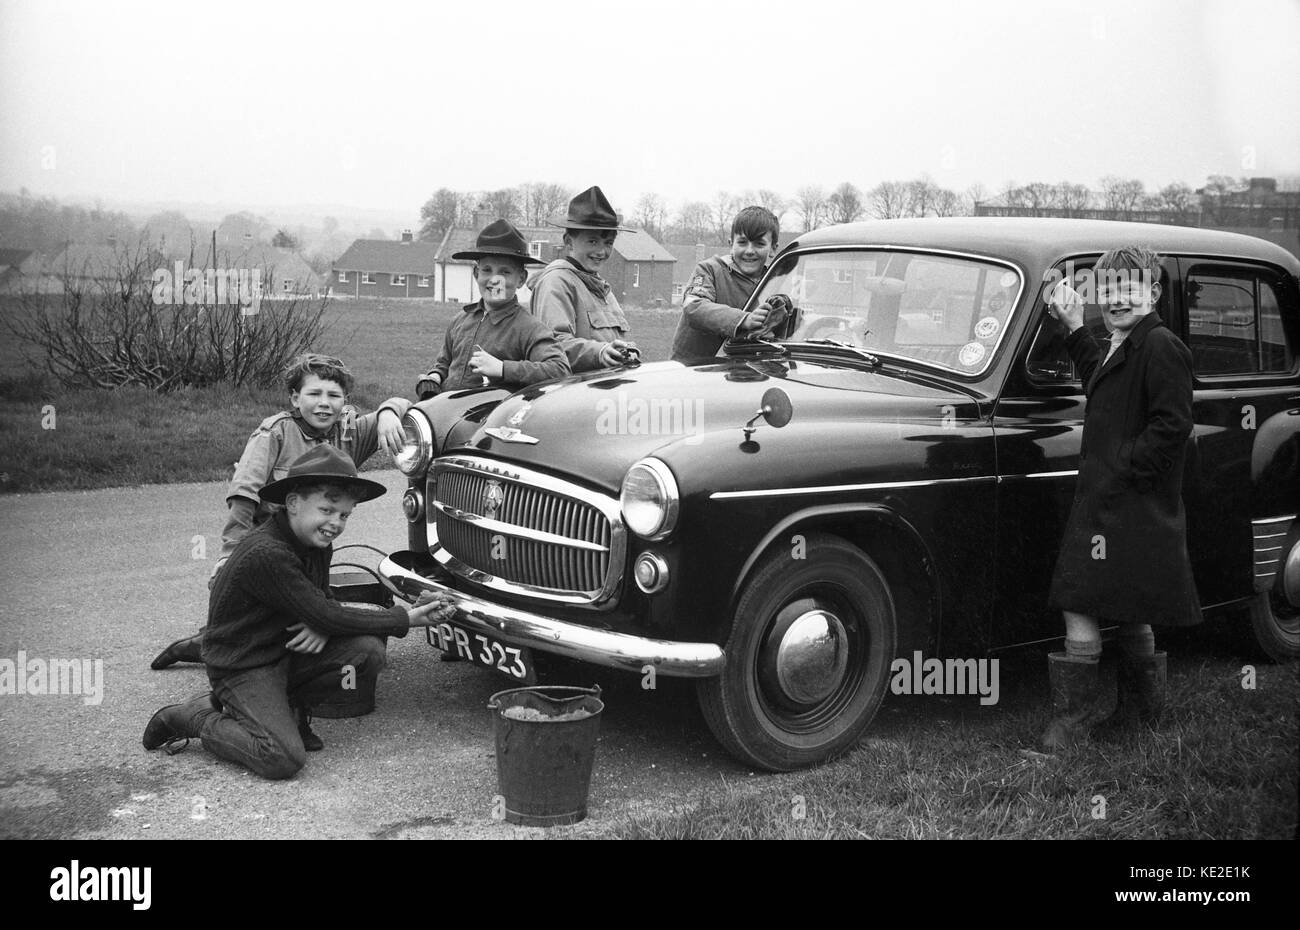 Scouts de garçon nettoyant une voiture Hillman pour la semaine bob-a-job en  1966. Scouts de garçon scout scout scout 1960s Grande-Bretagne Royaume-Uni  Photo Stock - Alamy